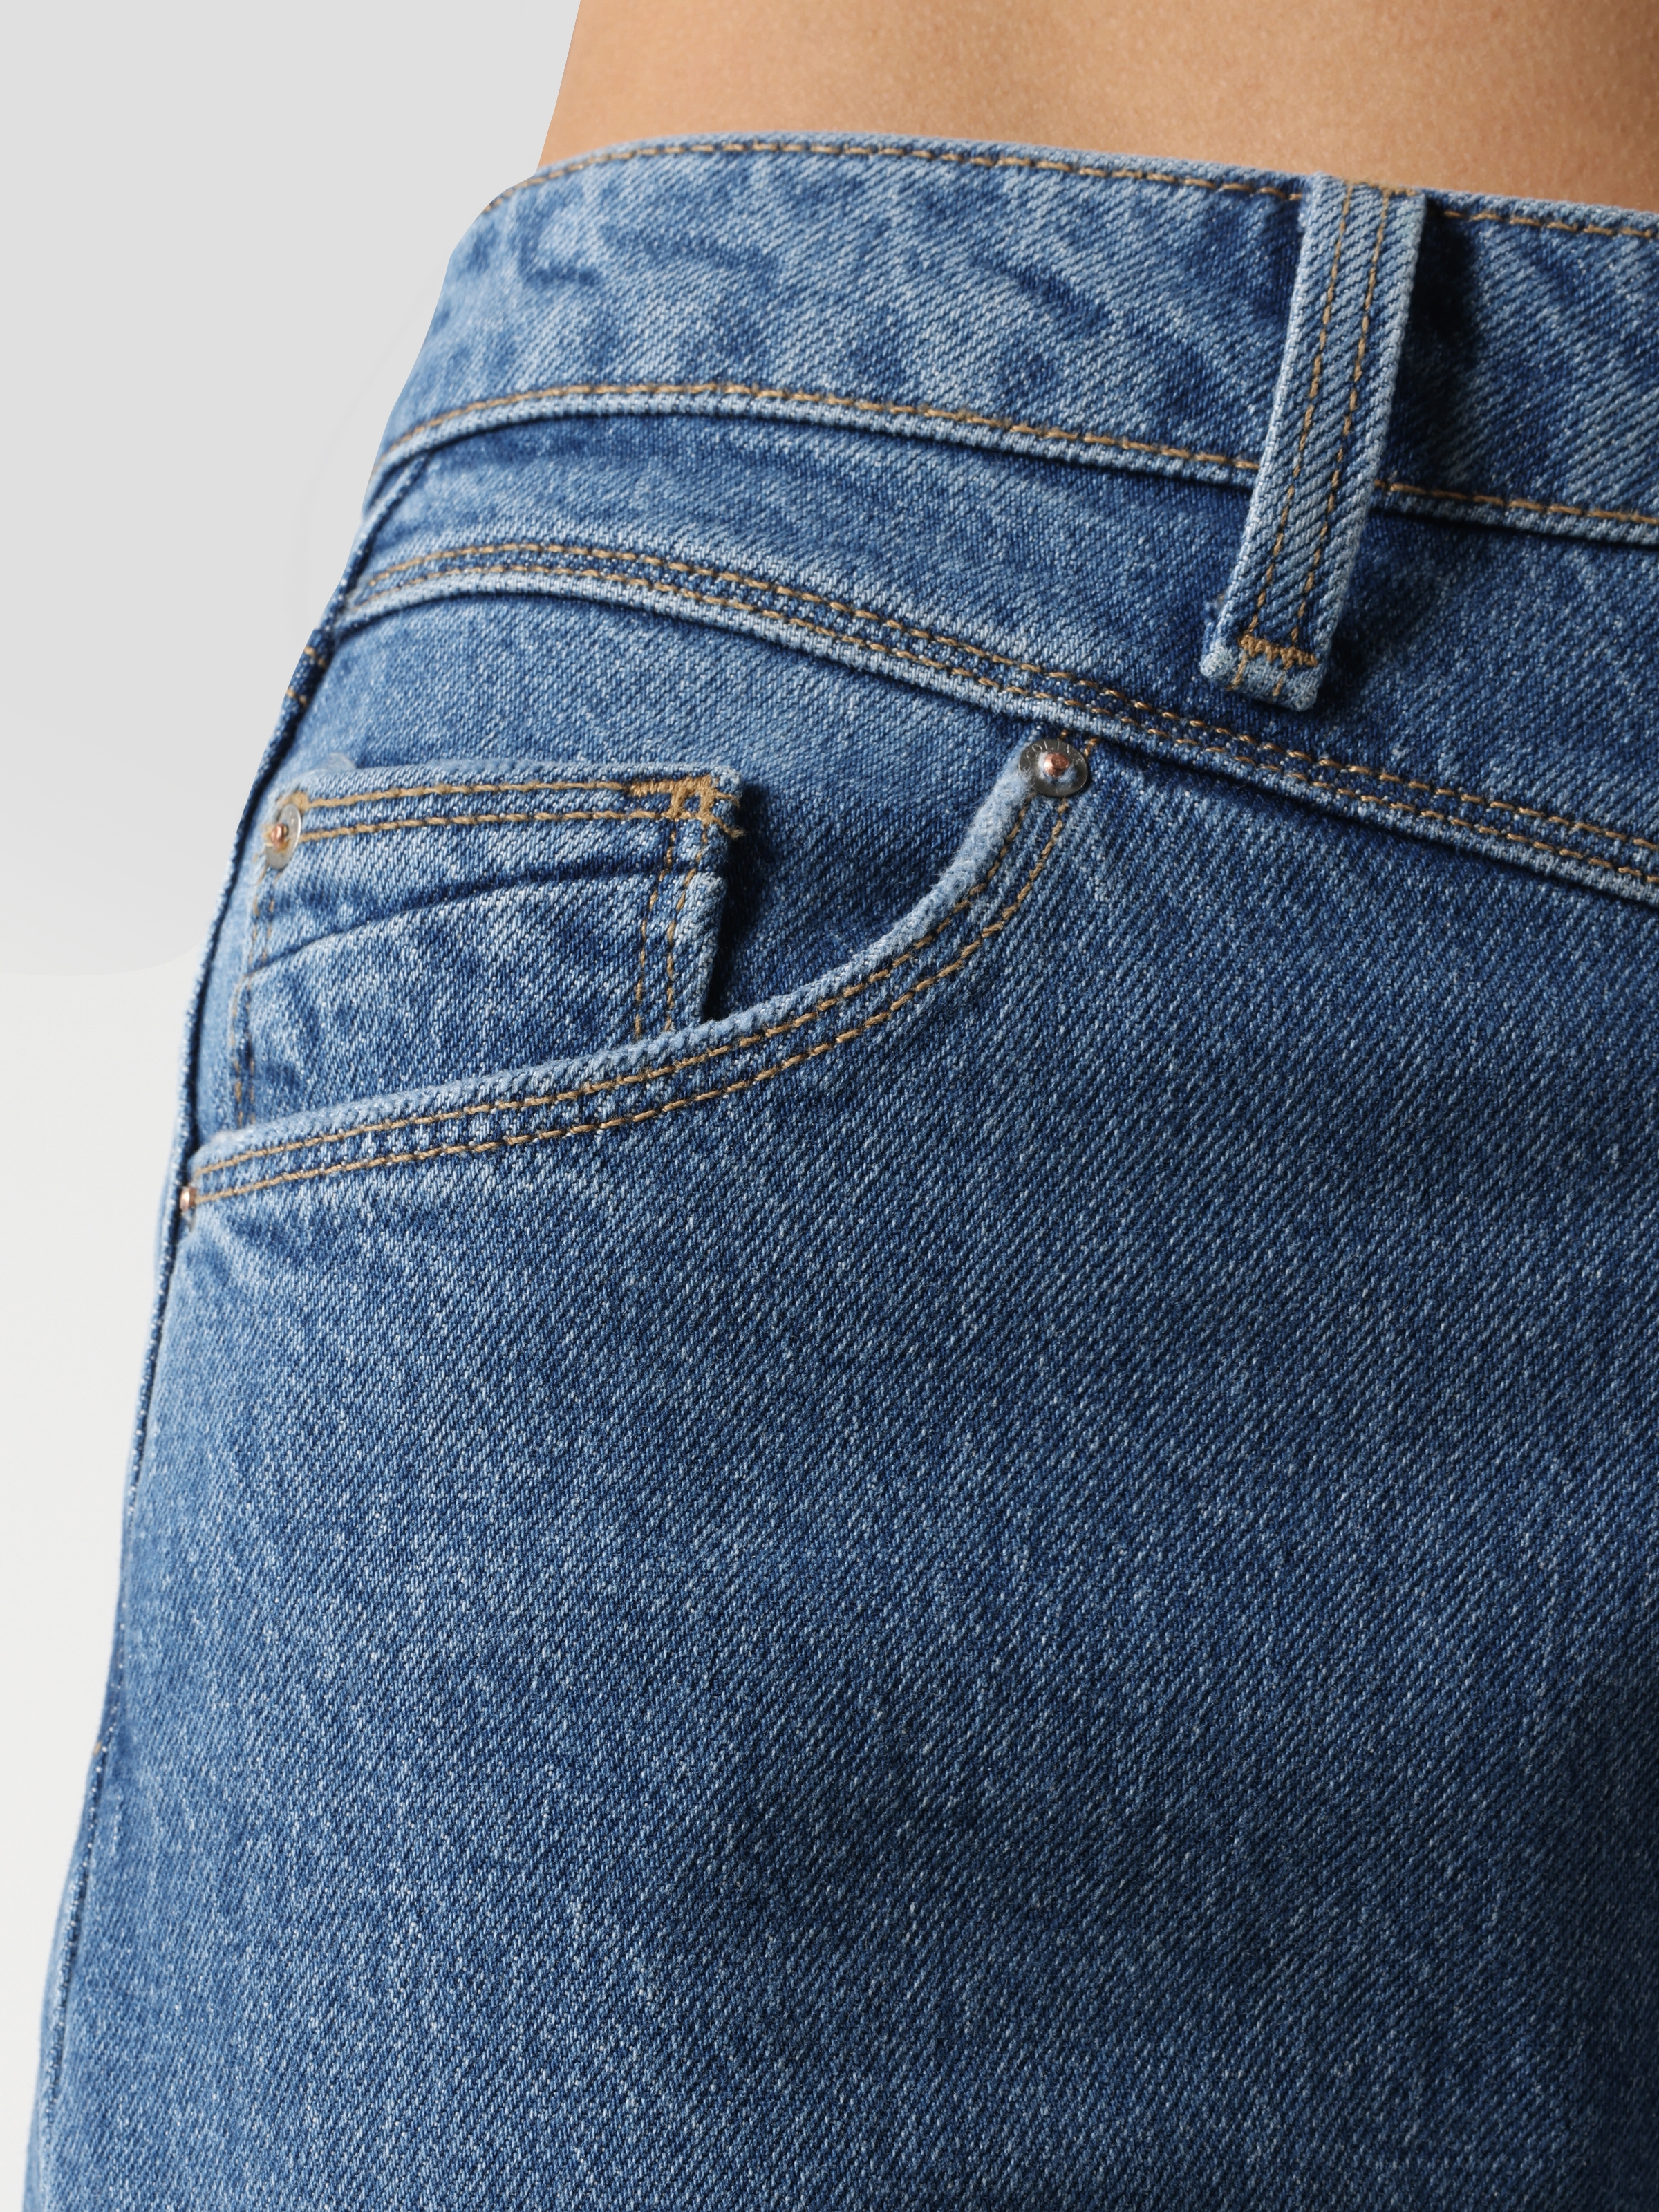 Afficher les détails de Pantalon 896 Maria Mom Fit Taille Haute Jambe Fuselée Bleu Pour Femme